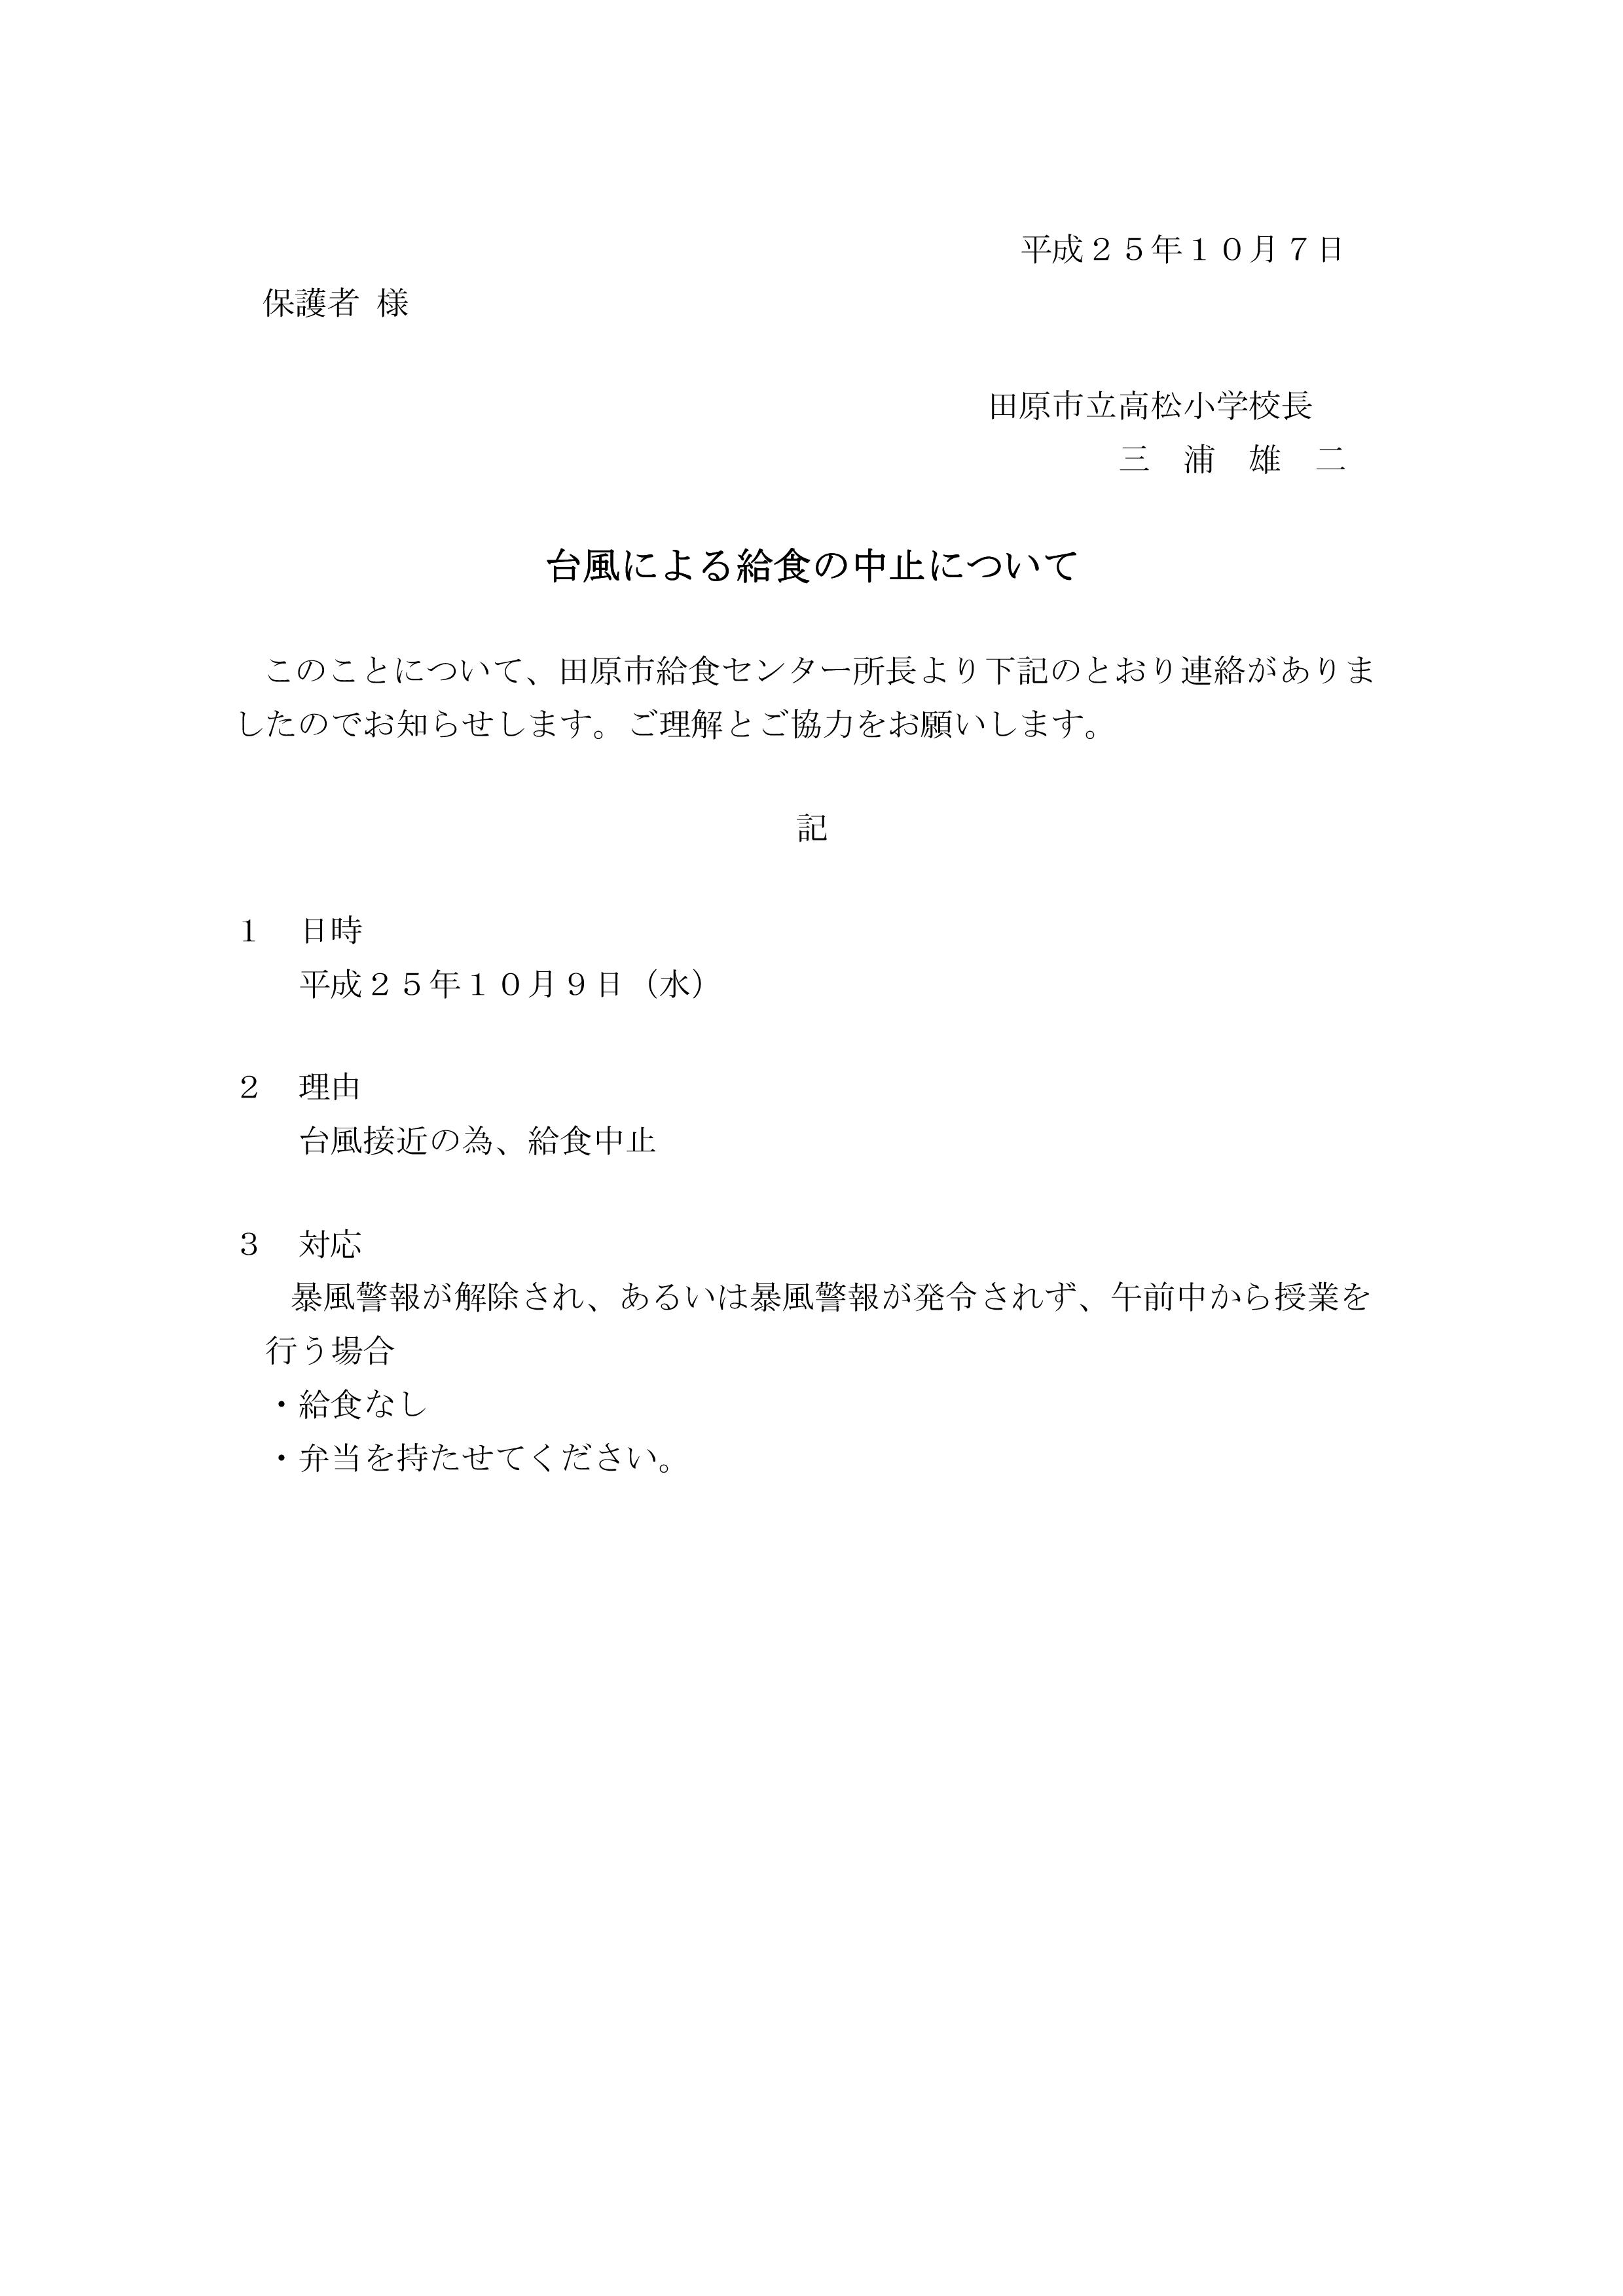 http://www.tahara.ed.jp/takamatsu-e/blog/Taro-%E7%B5%A6%E9%A3%9F%E4%B8%AD%E6%AD%A2%E4%BF%9D%E8%AD%B7%E8%80%85%E5%AE%9B.jpg